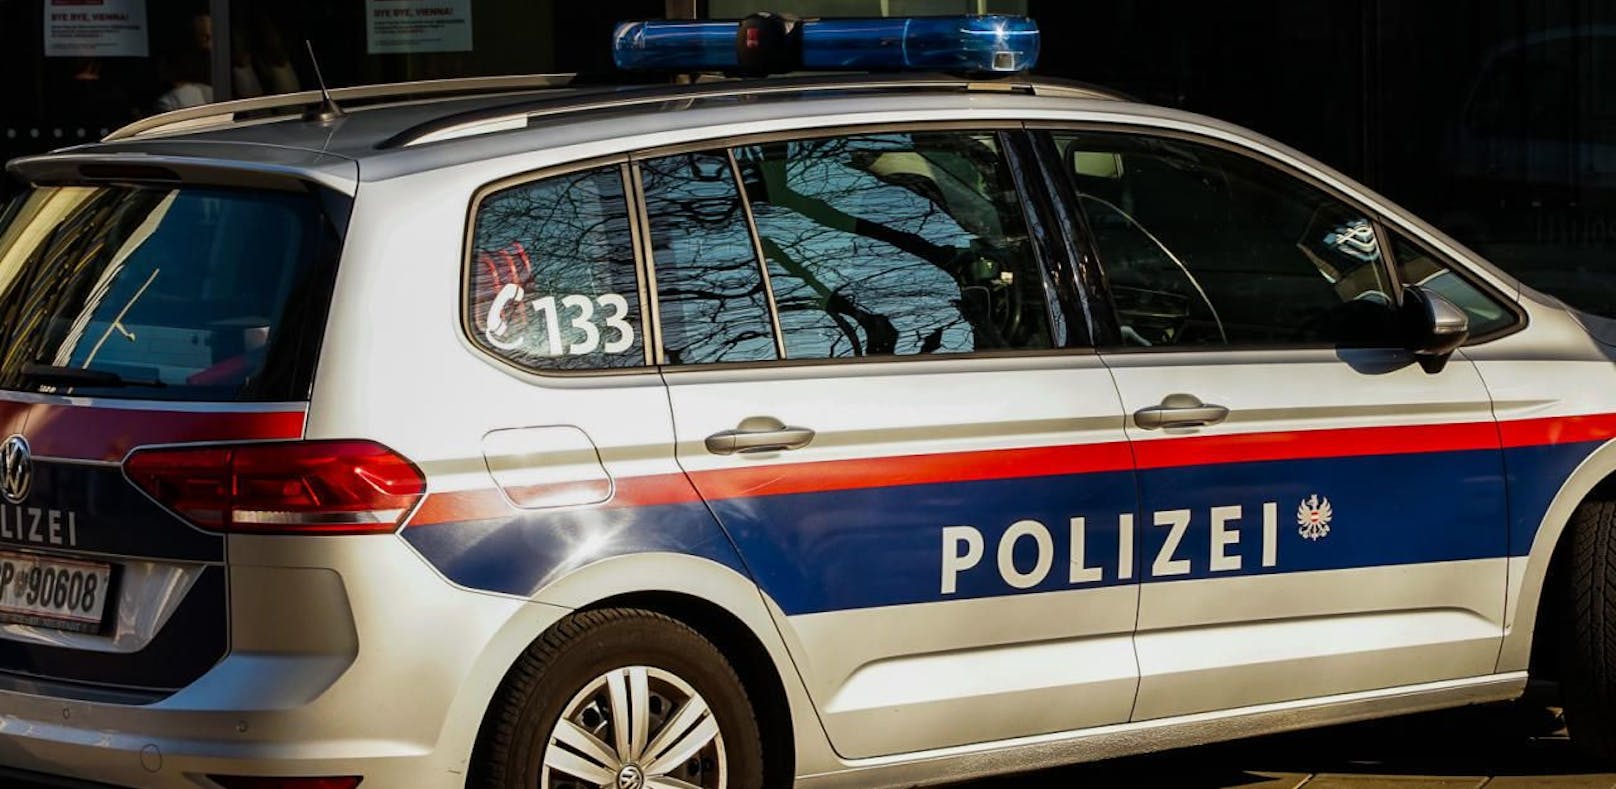 Am 11. März setzten zwei Männer (24, 25) zu einer Deliktserie am Wiener Gürtel an. Mehrere Personen wurden bedroht und verletzt. (Symbolfoto)